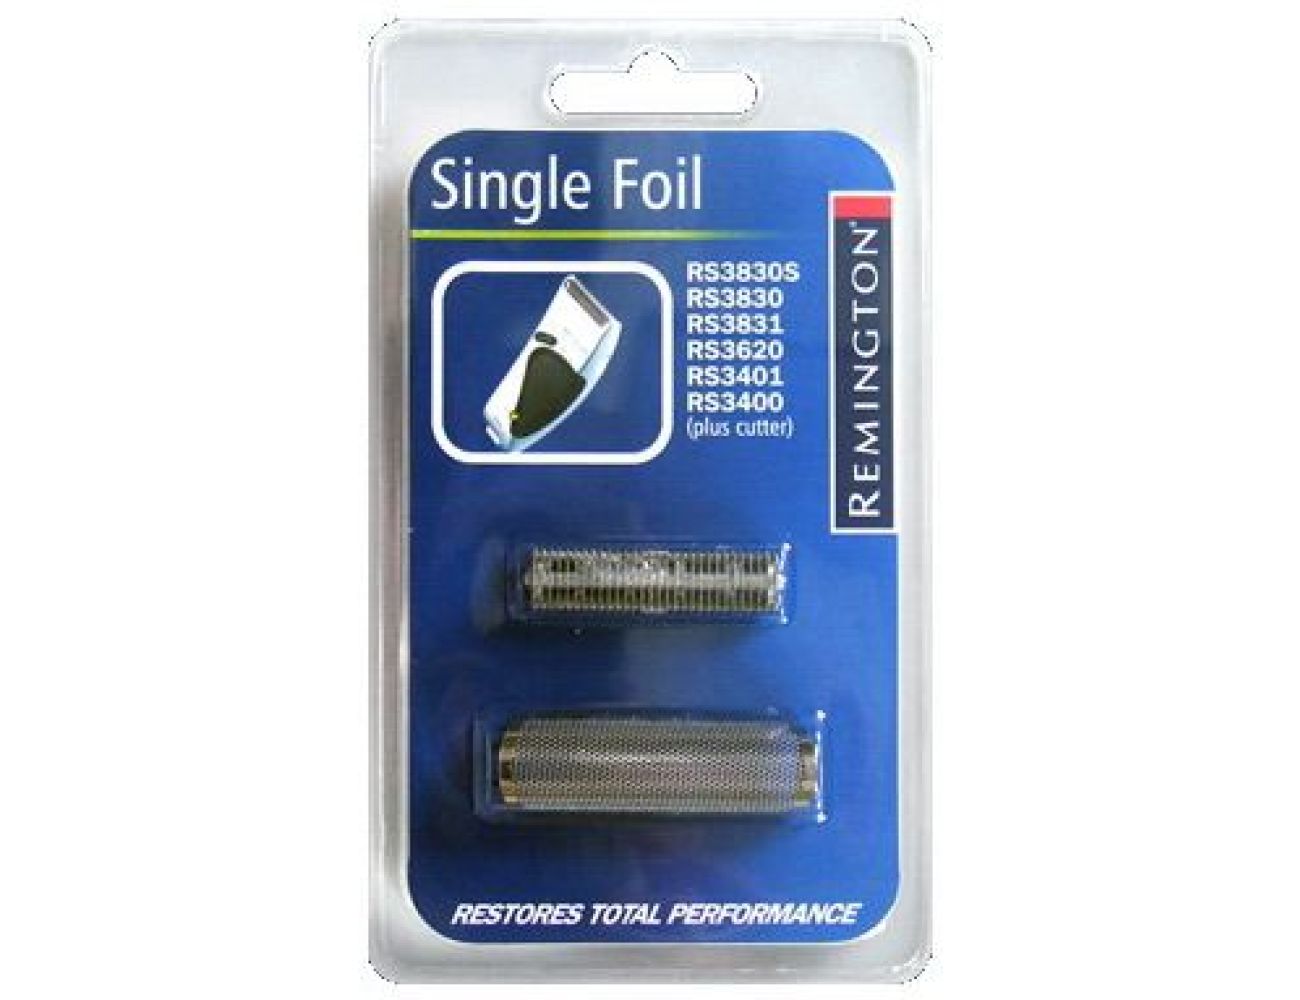 Сетка и режущий блок Remington SP72 Single Foil (44025530400) для RS3830S, RS3830, RS3831, RS3620